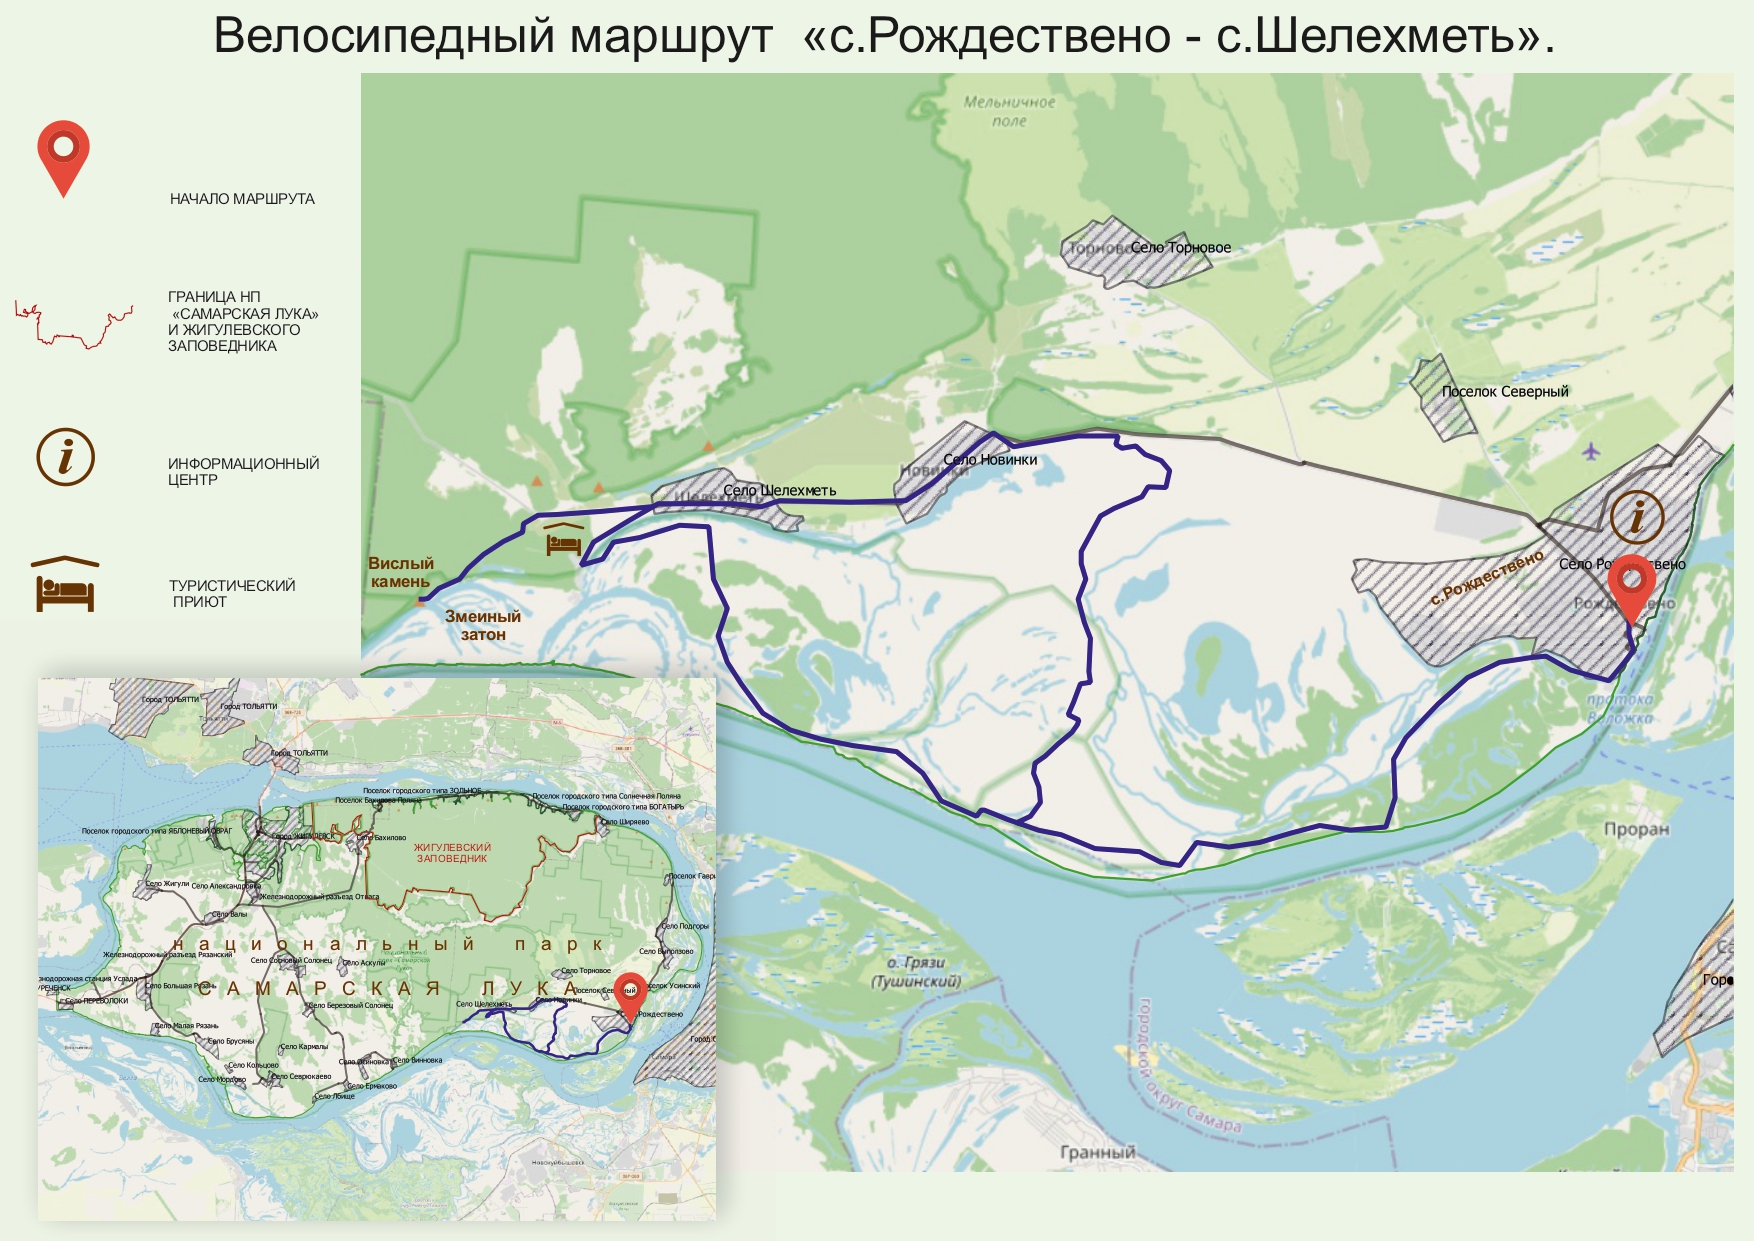 самарская лука национальный парк карта зонирования